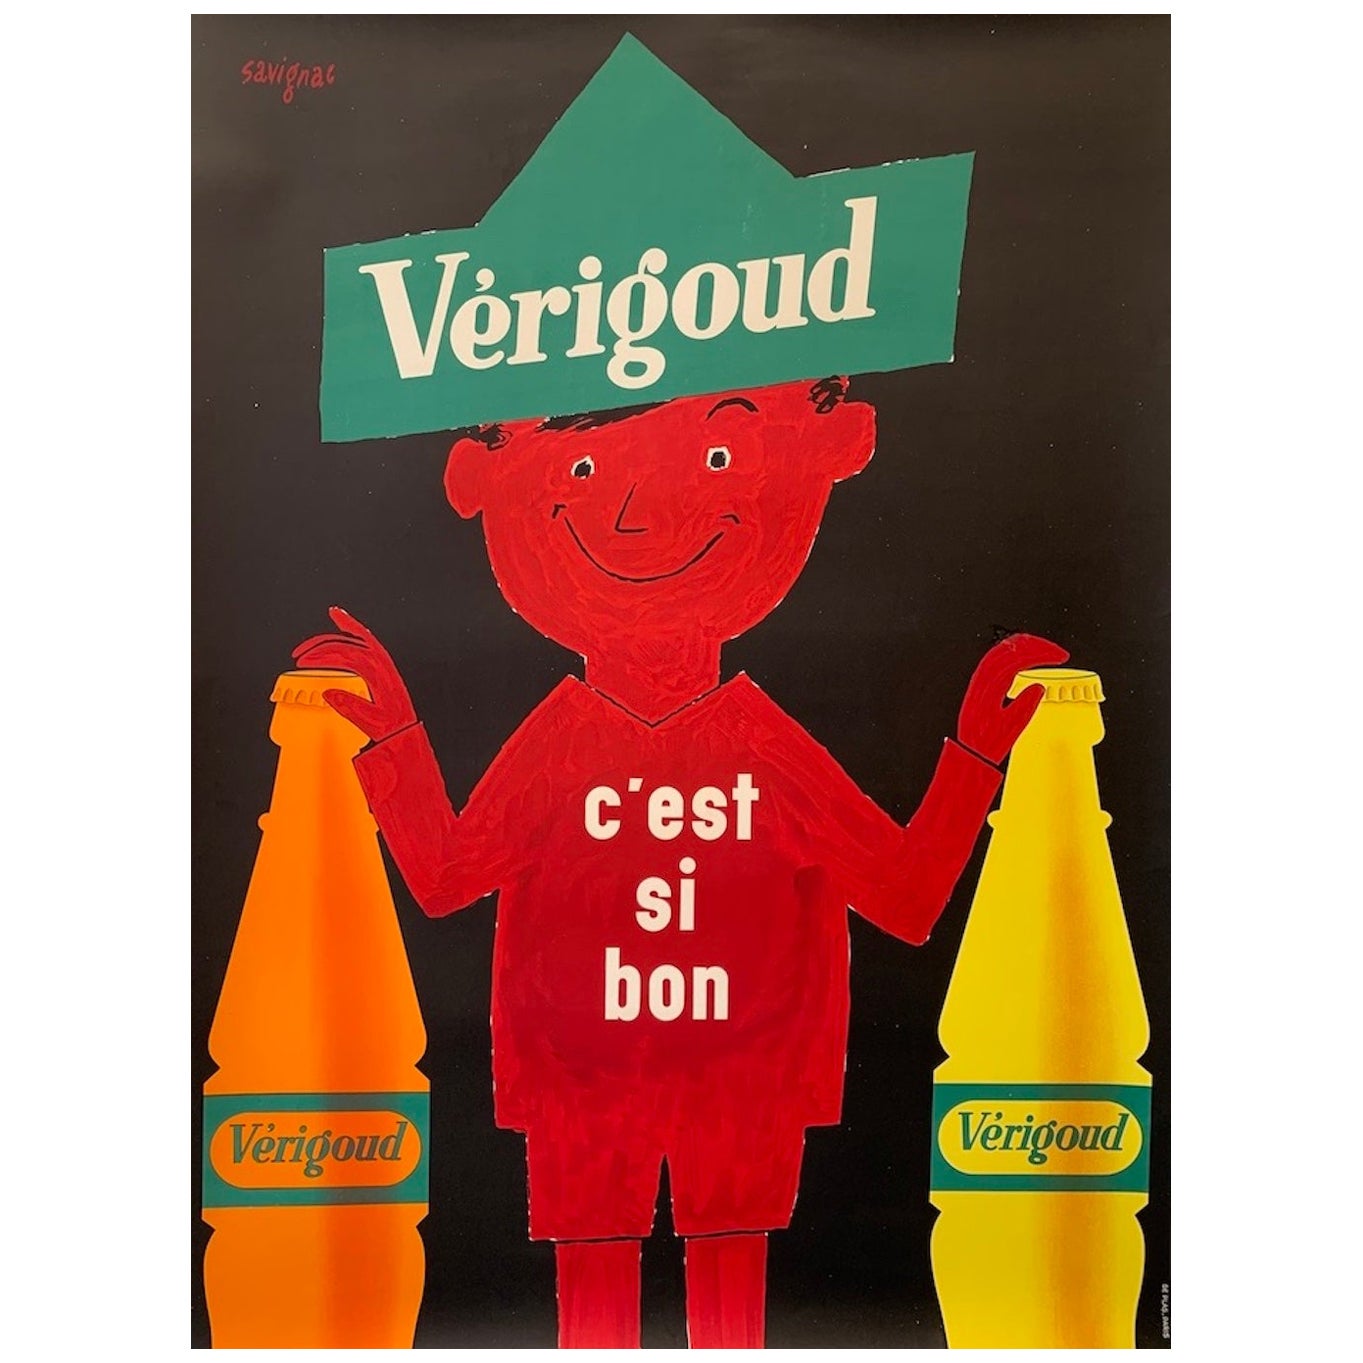 Französisches Vintage-Werbeplakat, Verigoud von Savignac, 1955